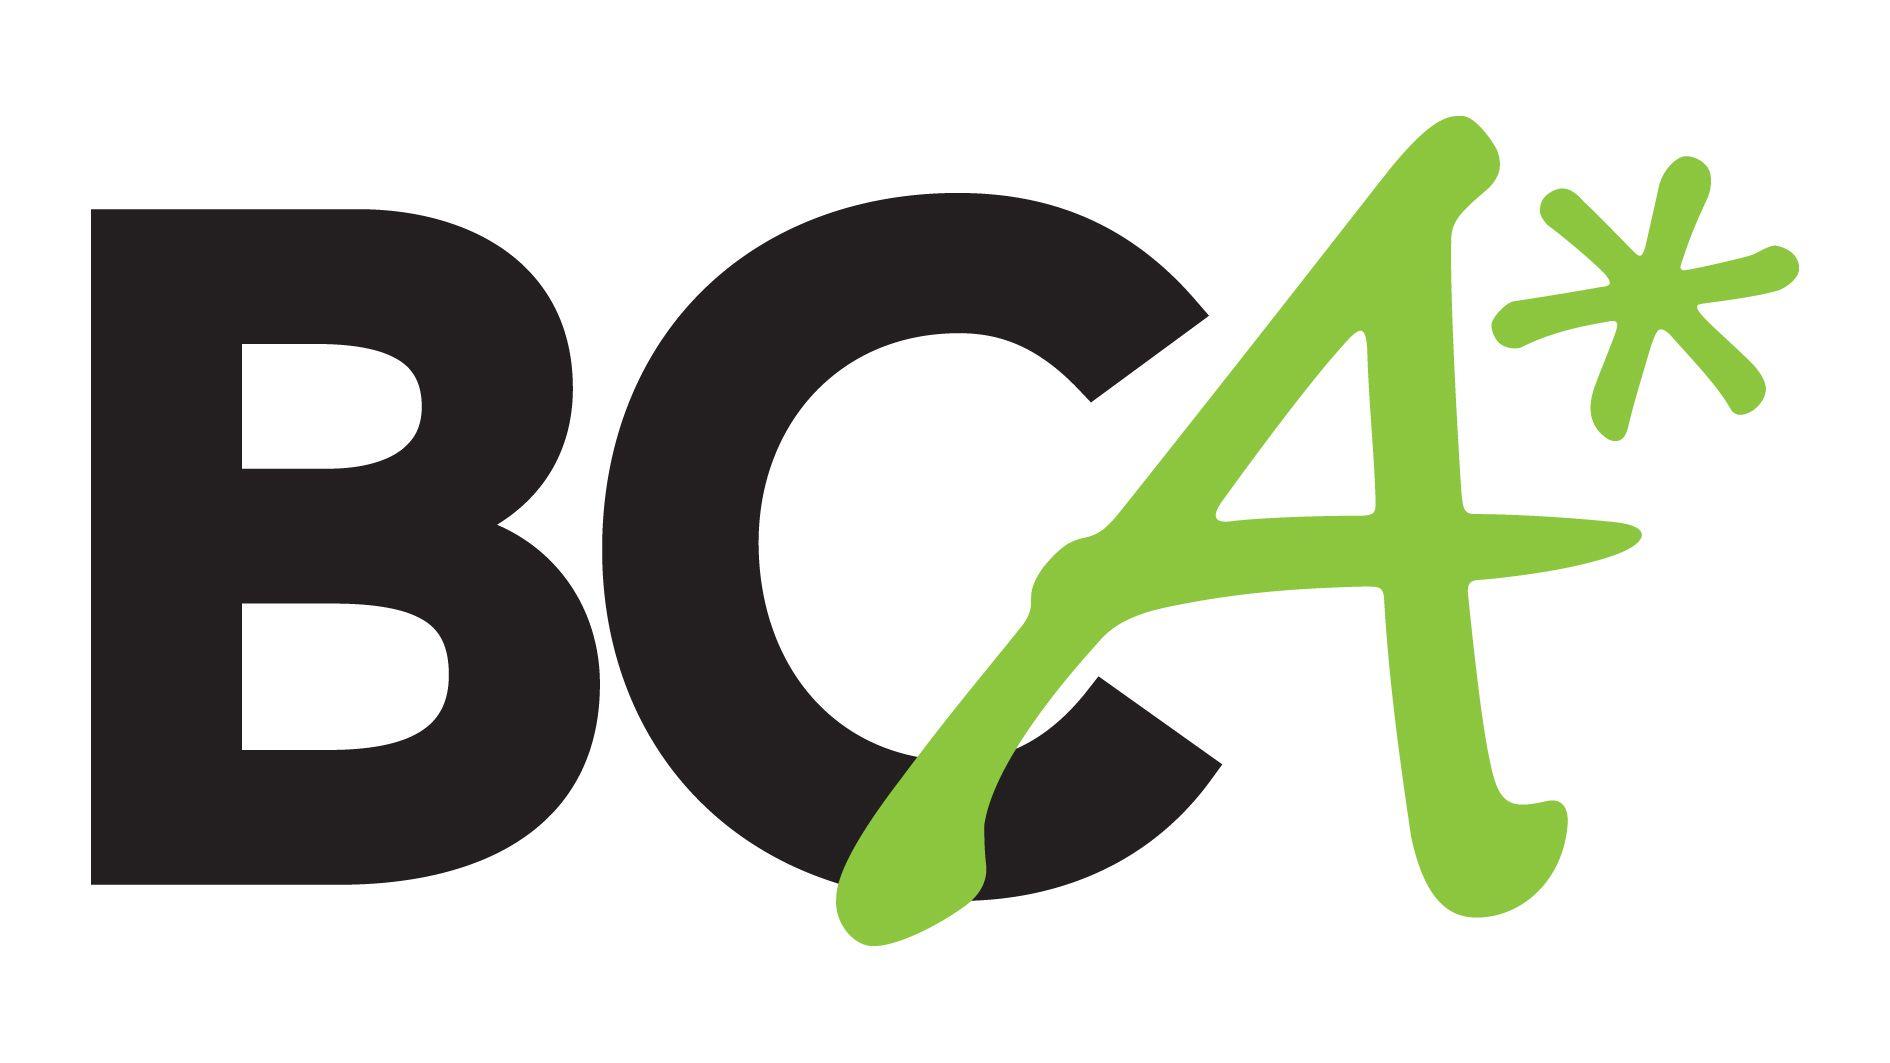 BCA School Logo - Bca Logos